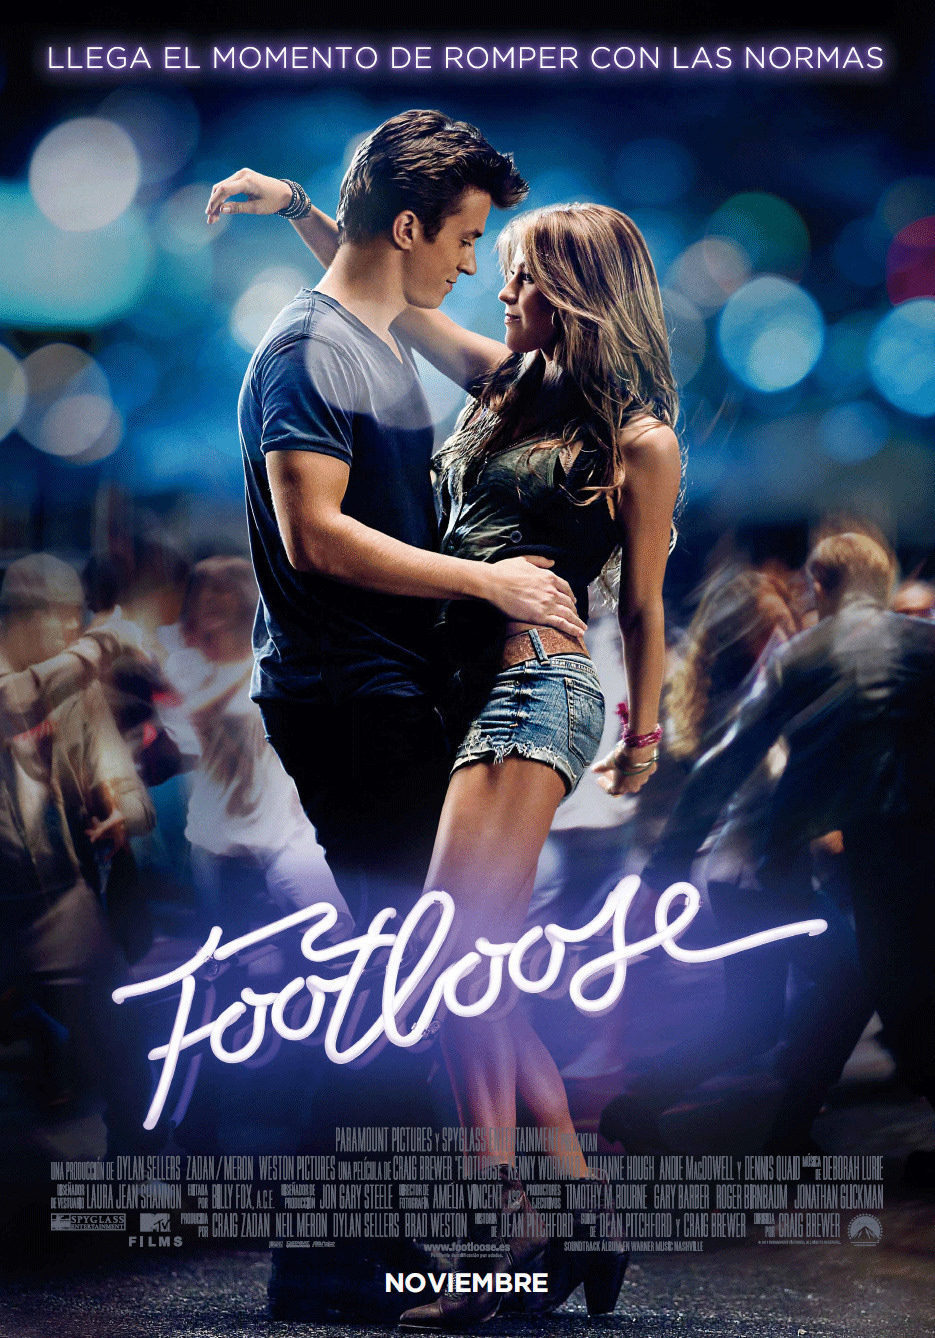 Poster of Footloose - España